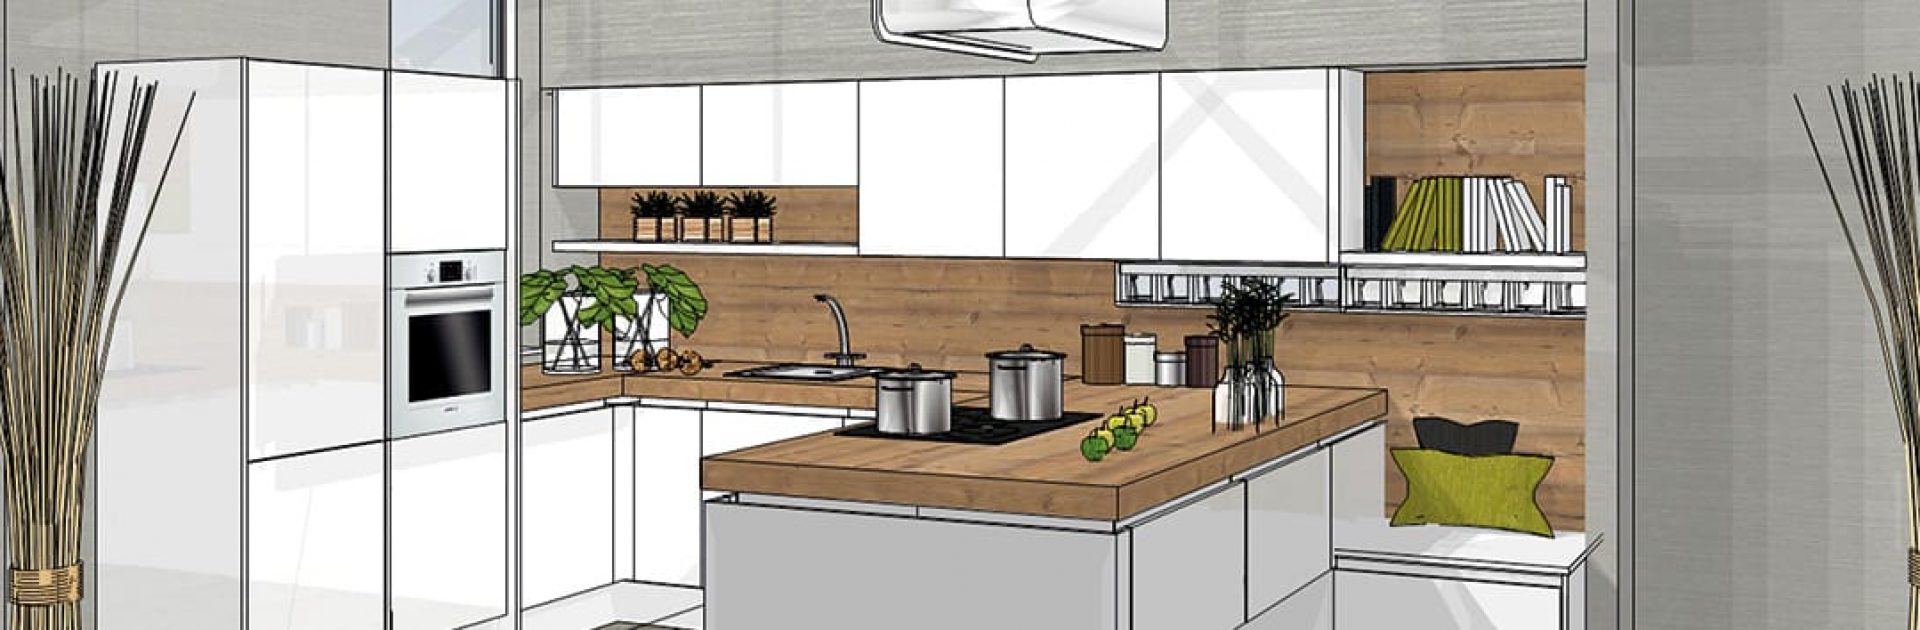 online keuken ontwerpen keukenplanner eigenhuis keukens